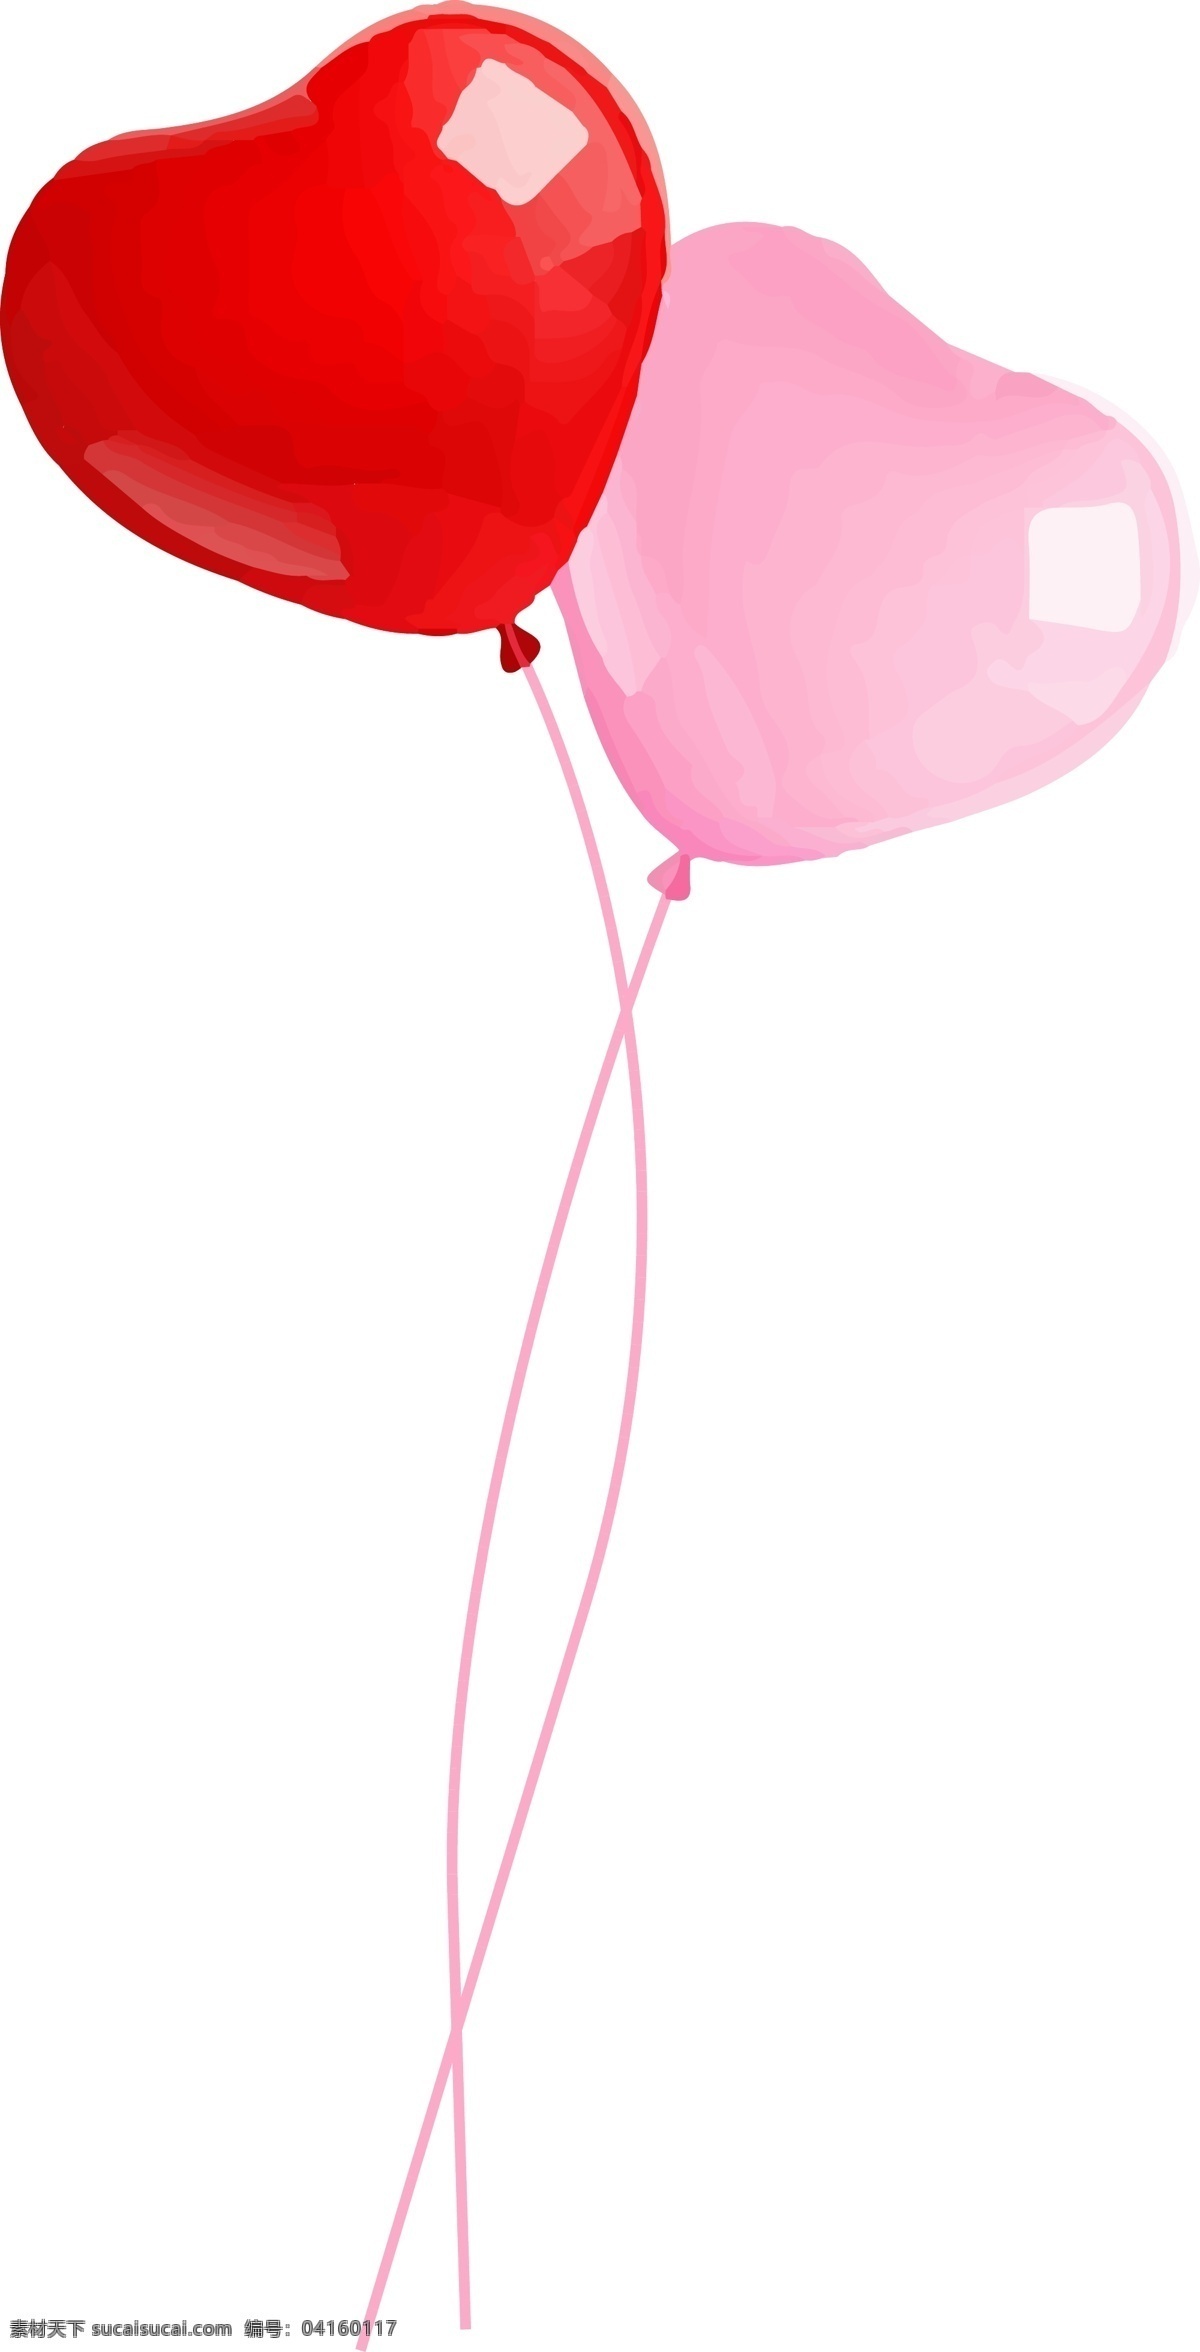 亲吻 情人节 粉红色 恋爱 可爱 节日 气球 儿童节 卡通 粉色 心形 六一 七夕 漂浮气球 手绘气球 心形气球 爱情 表白